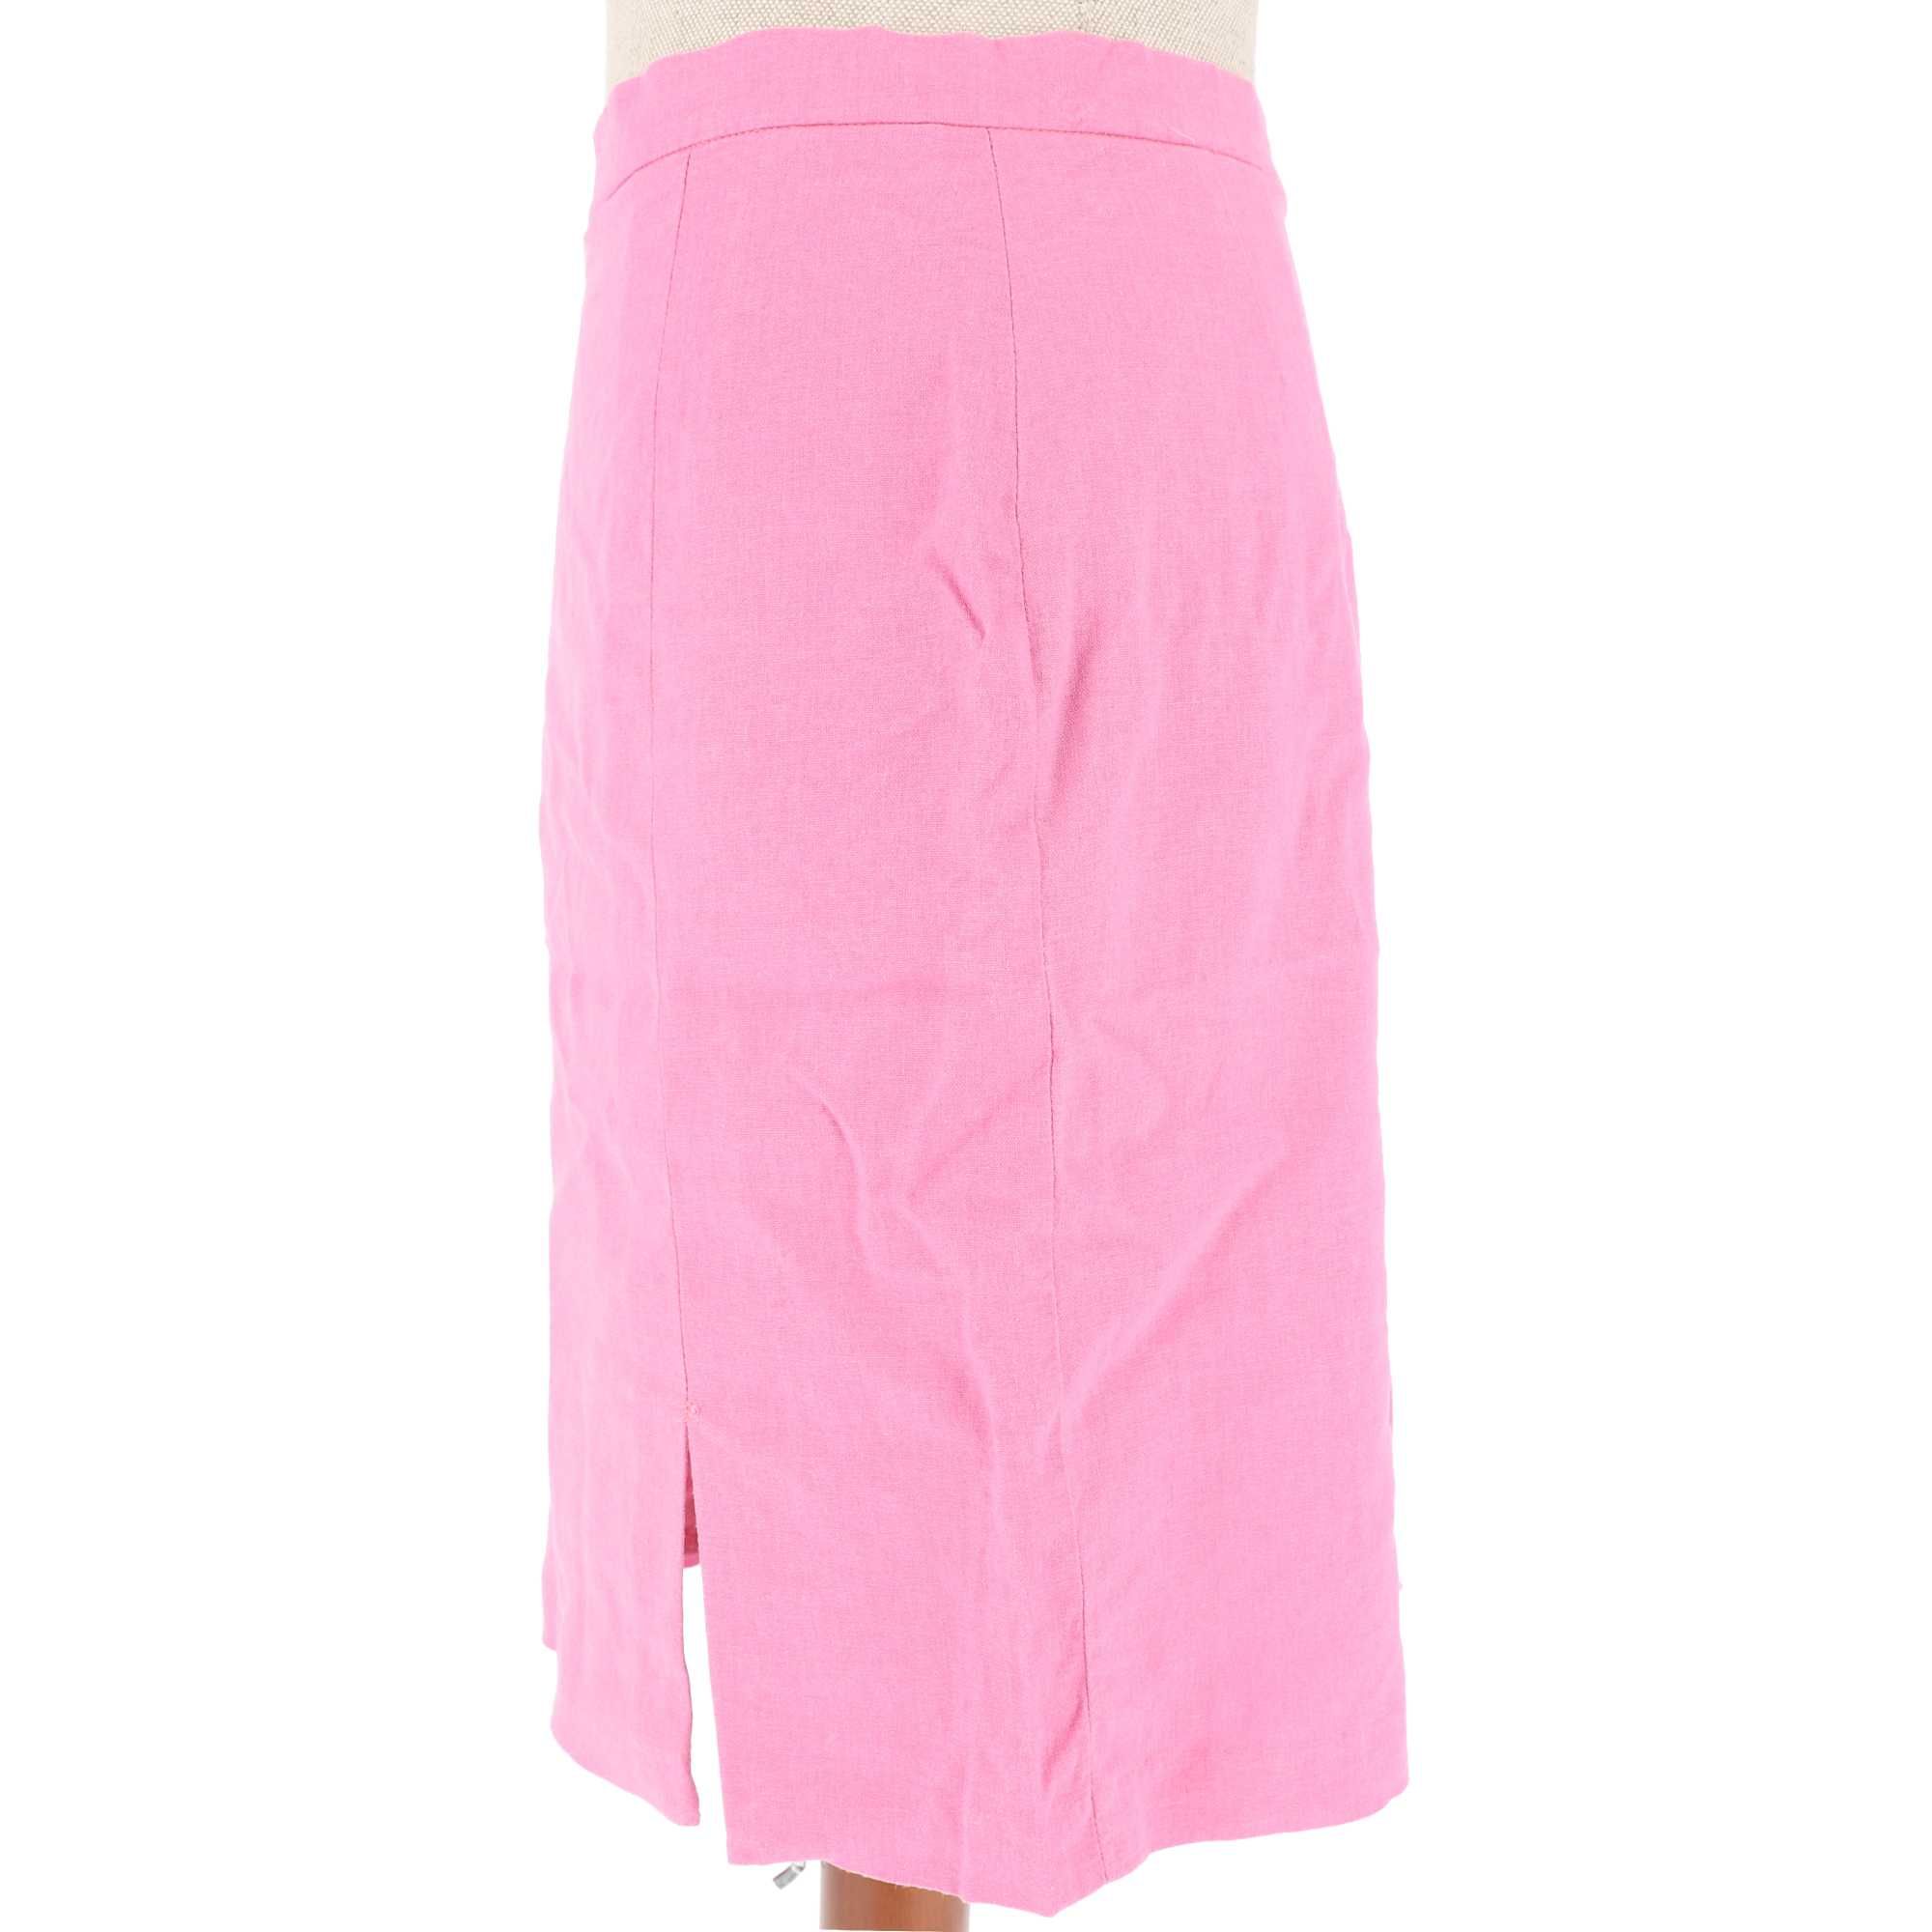 Klasyczny różowy komplet żakietu i spódnicy marki Minge, rozmiar 44